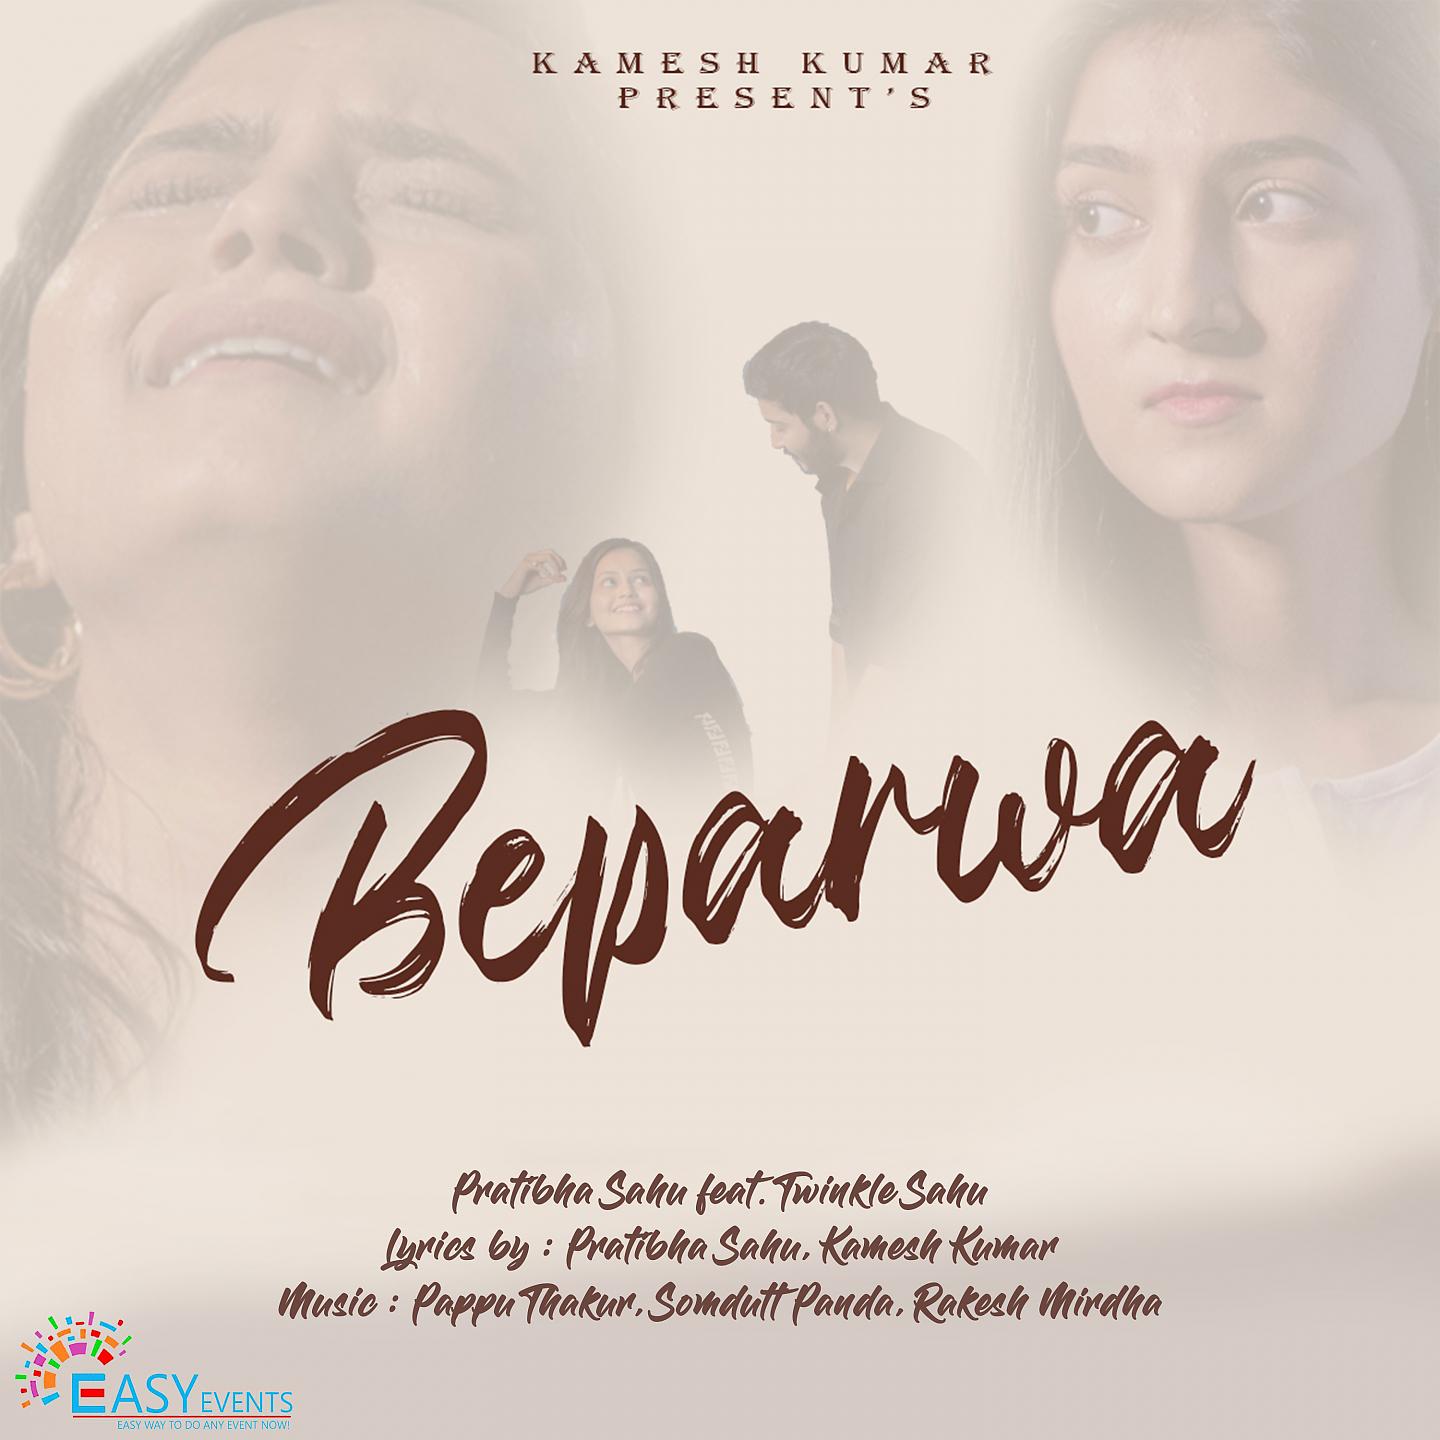 Постер альбома Beparwa